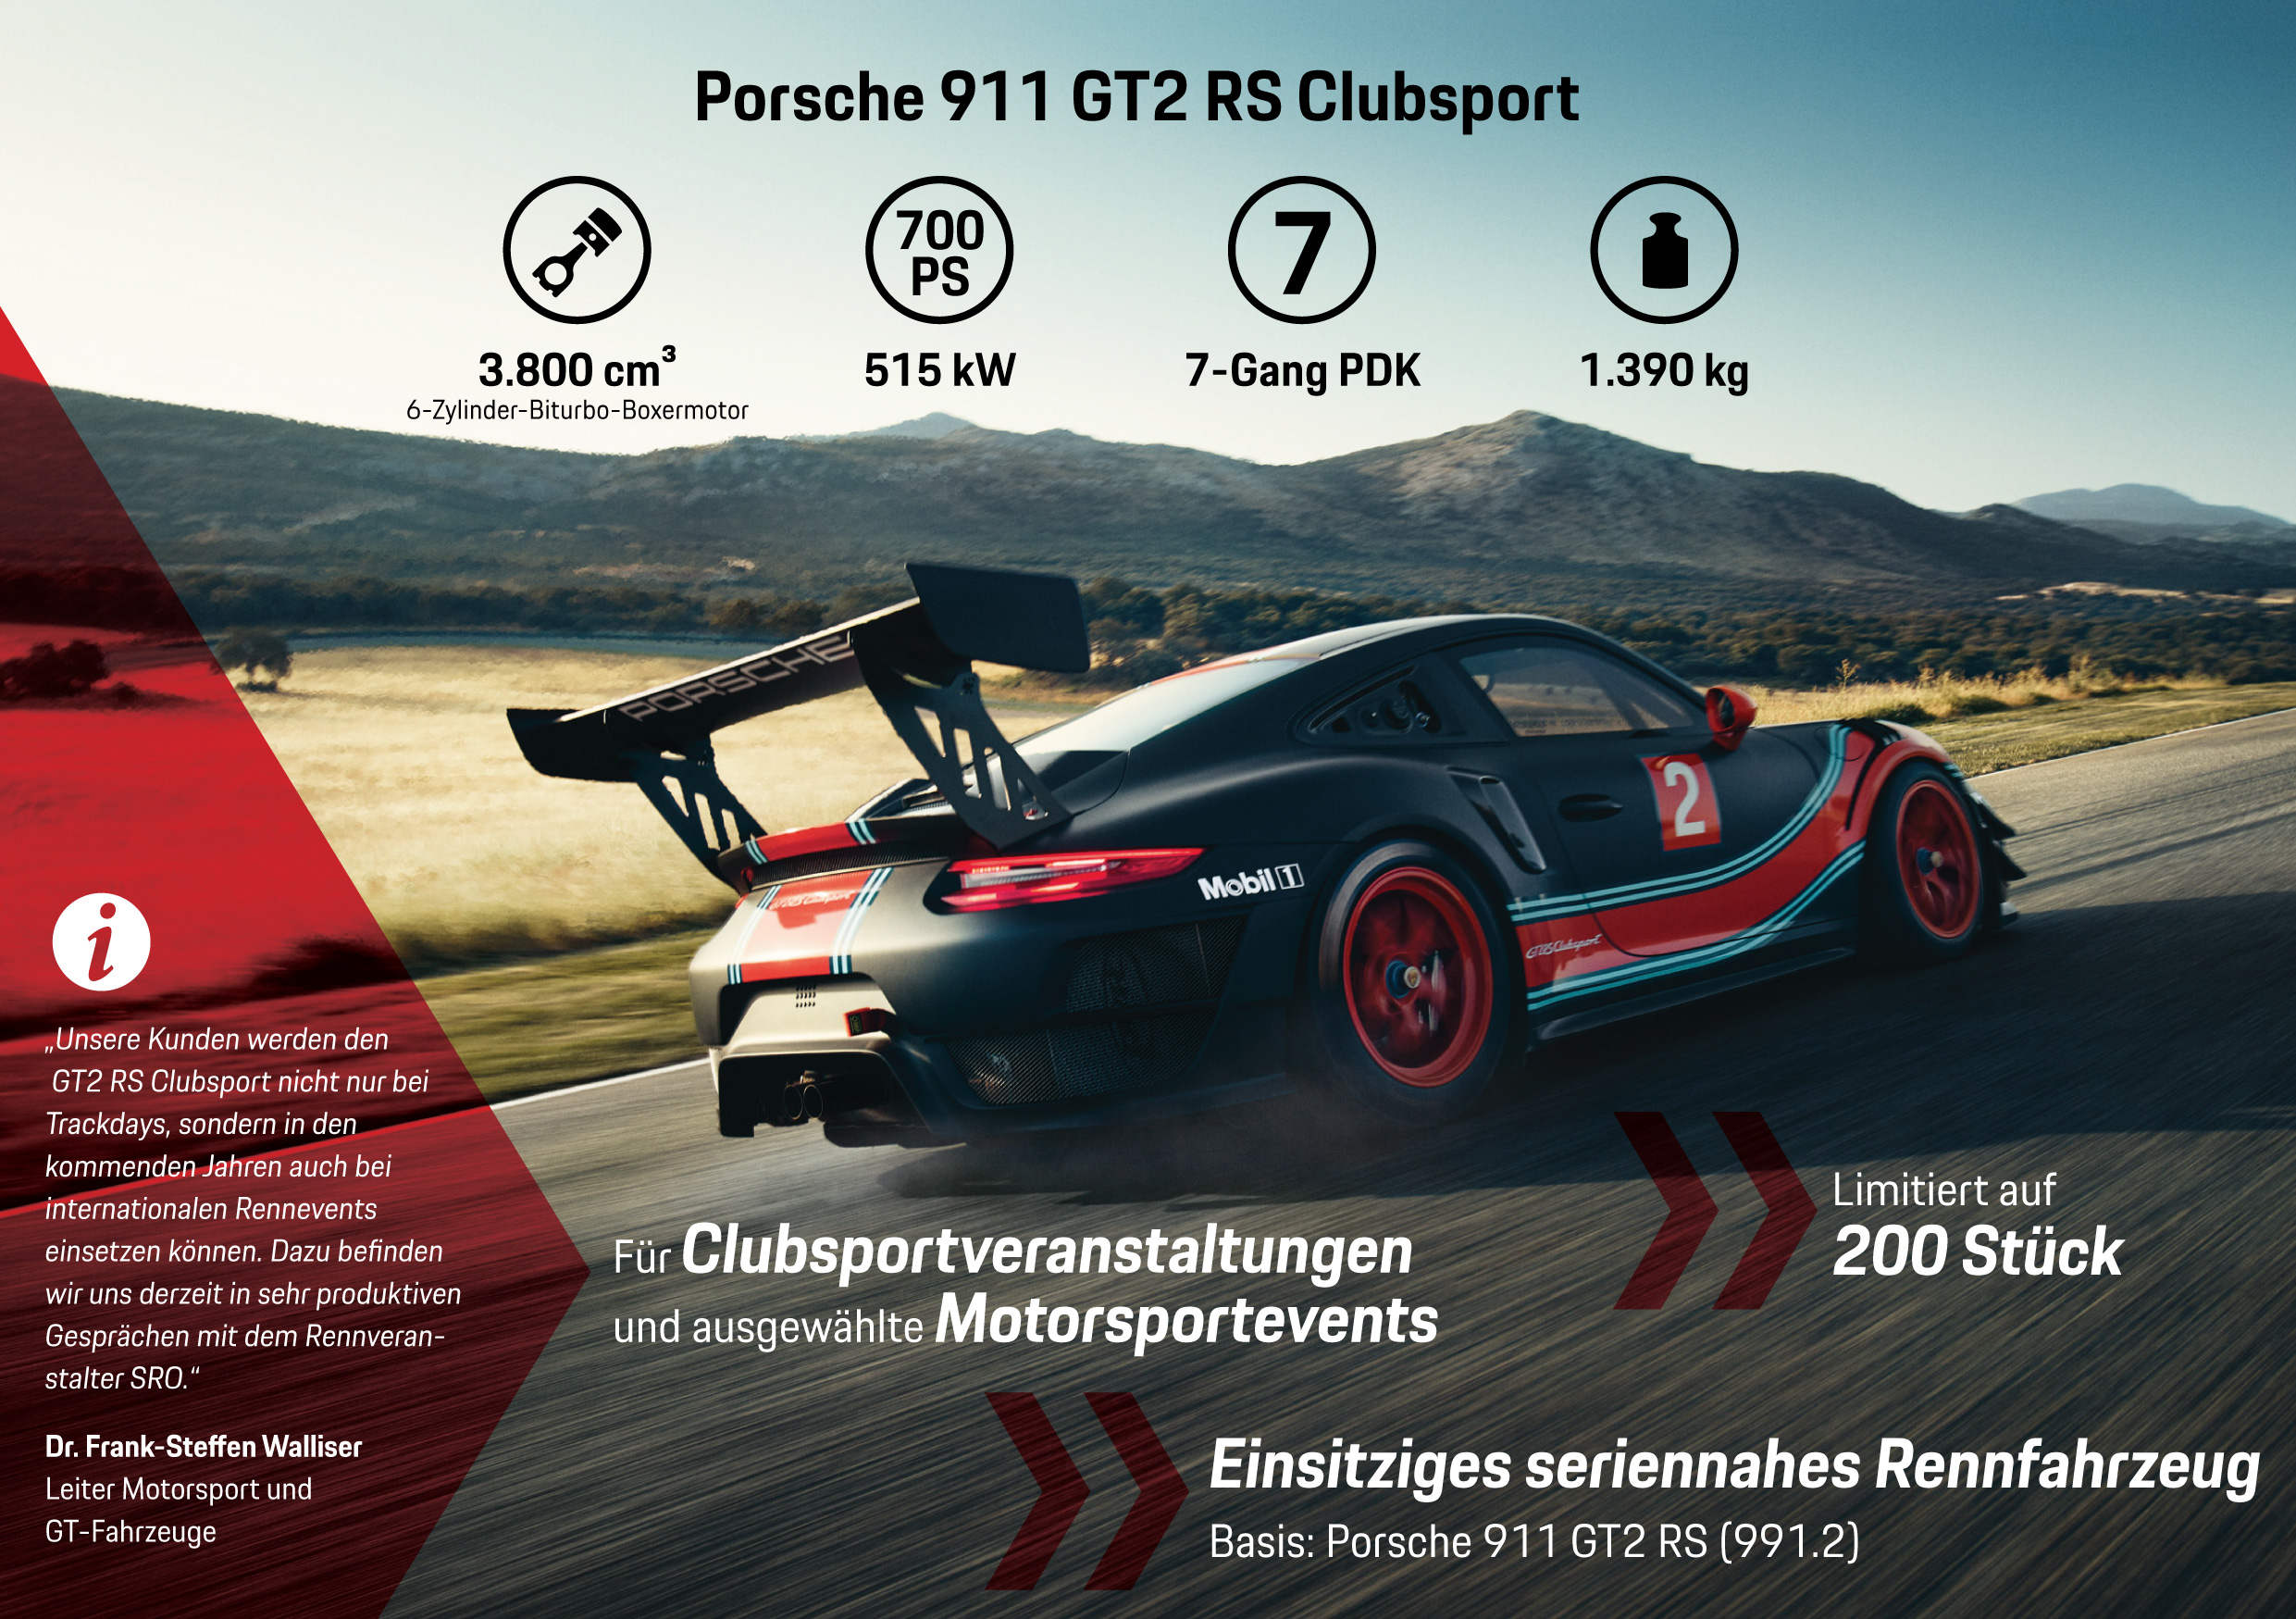 Porsche 911 GT2 RS Clubsport, Infografik, 2018, Porsche AG